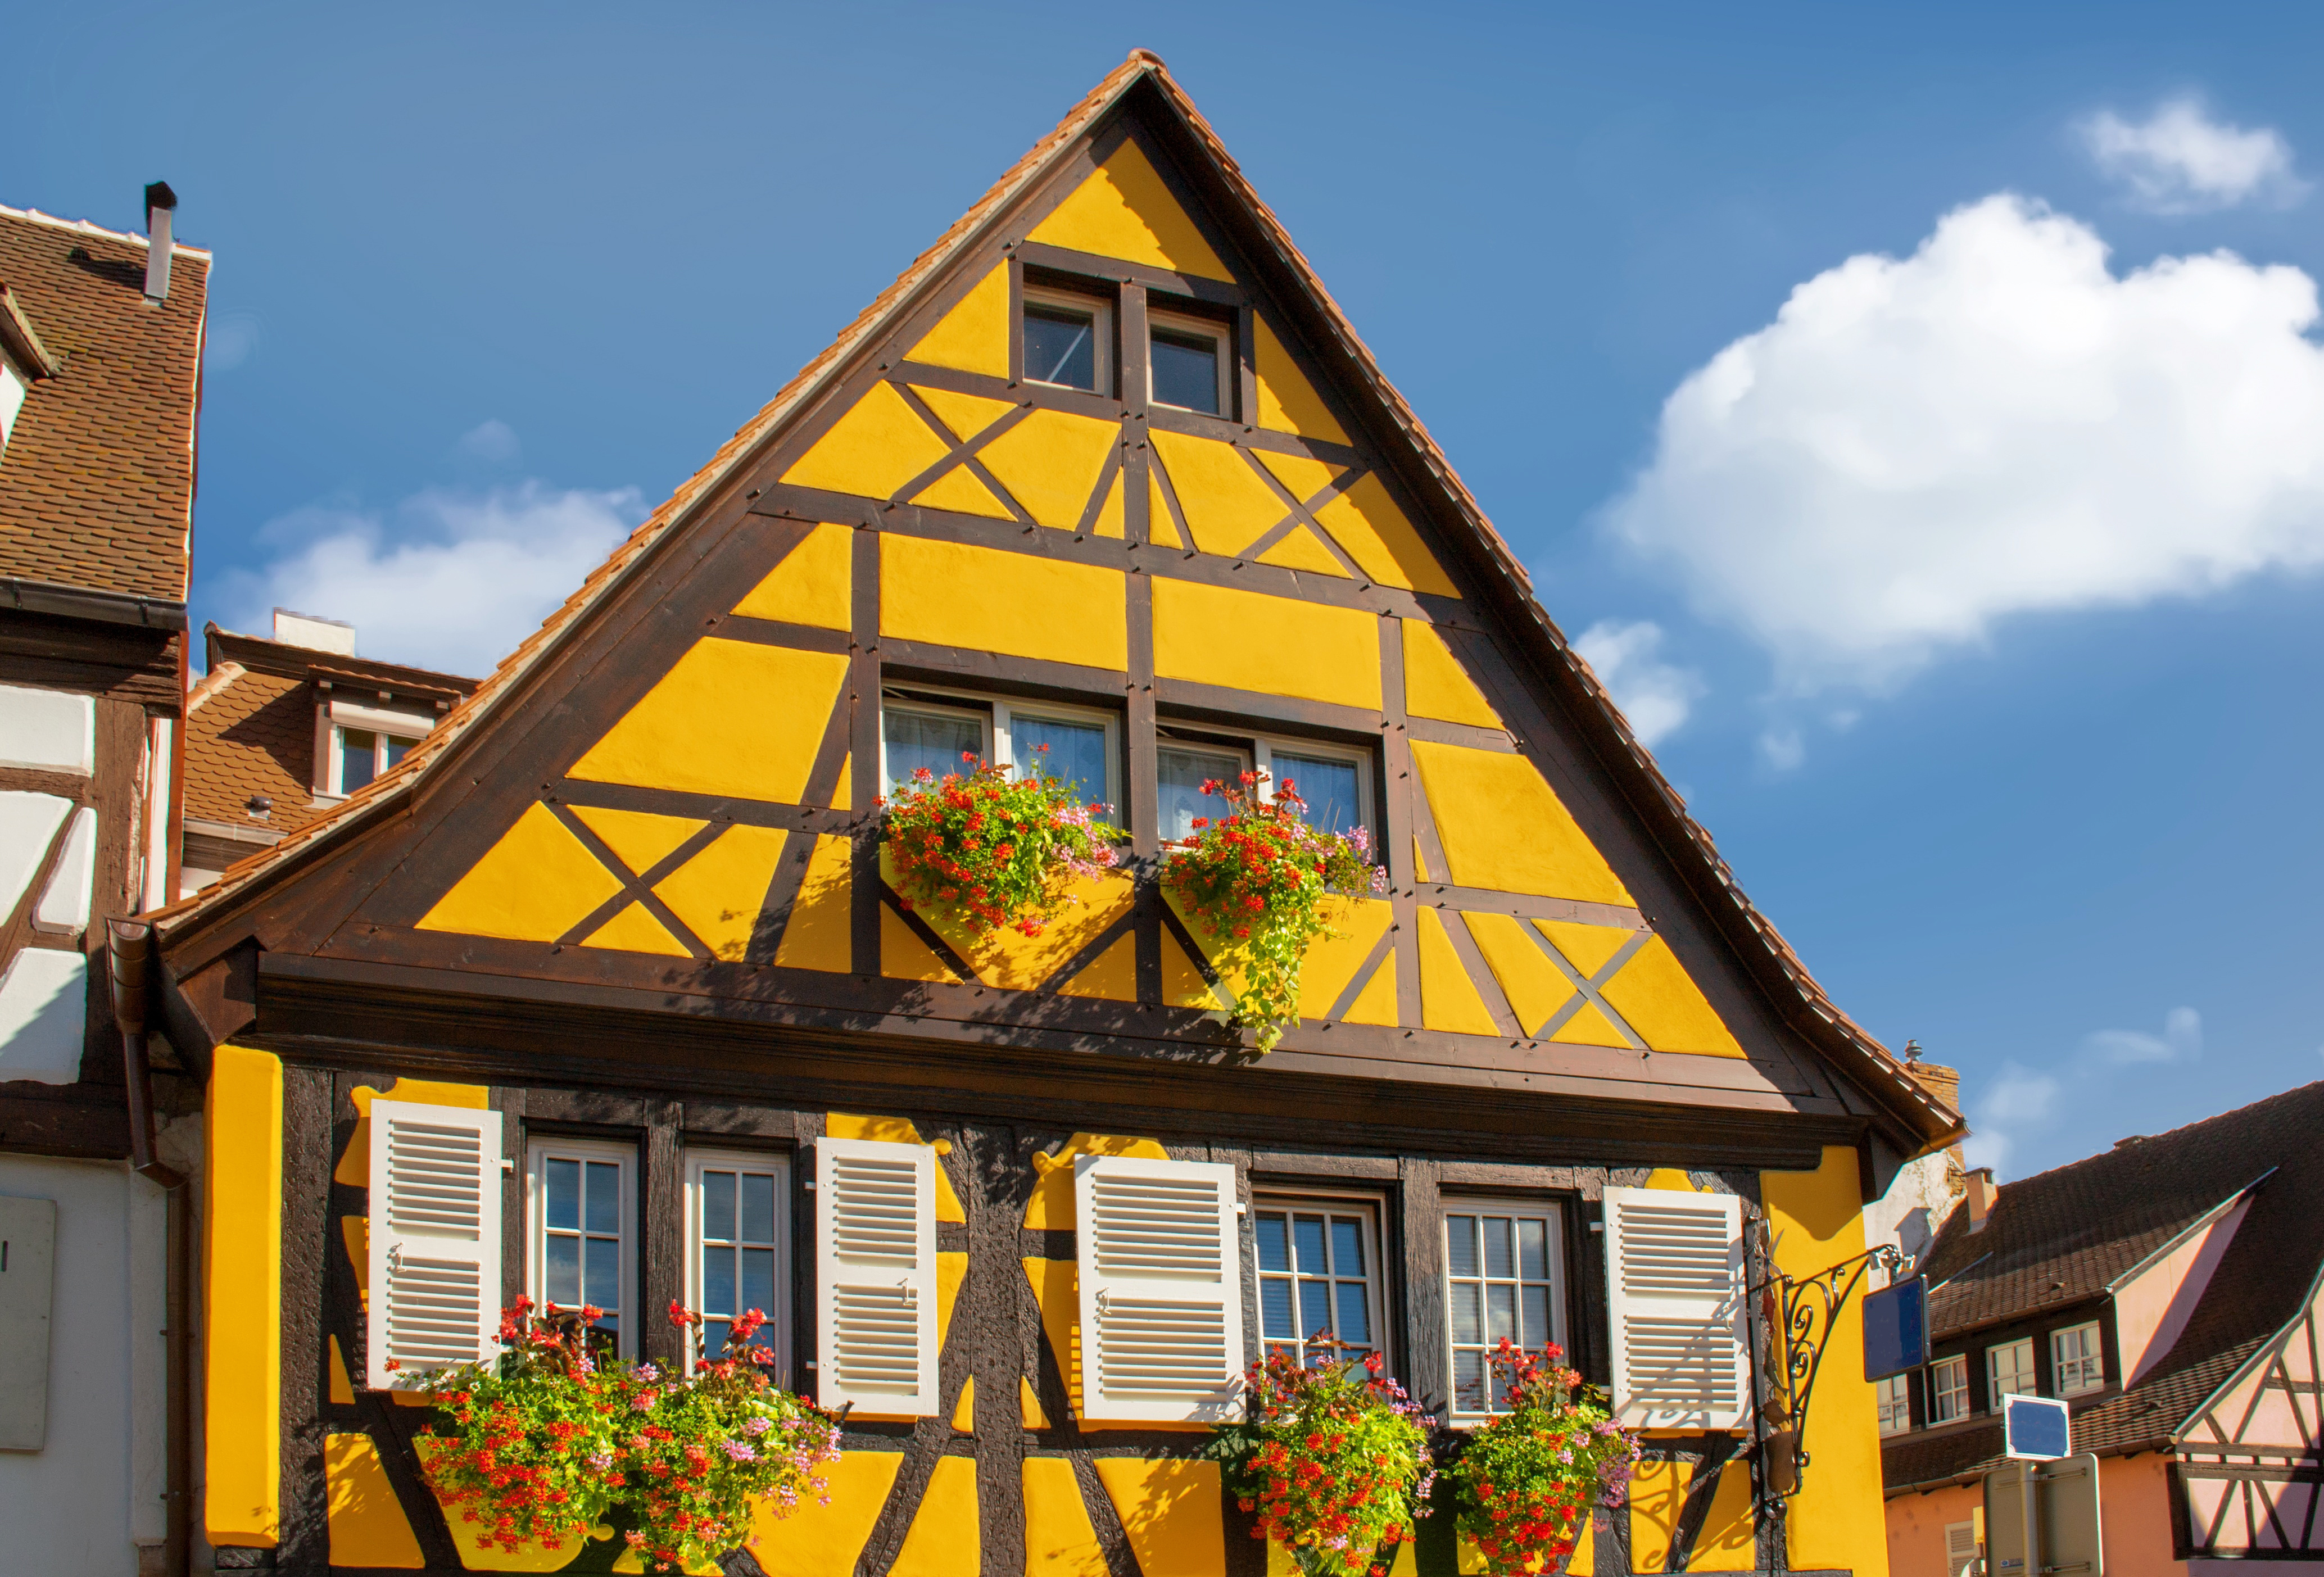 Maison à colombage en Alsace